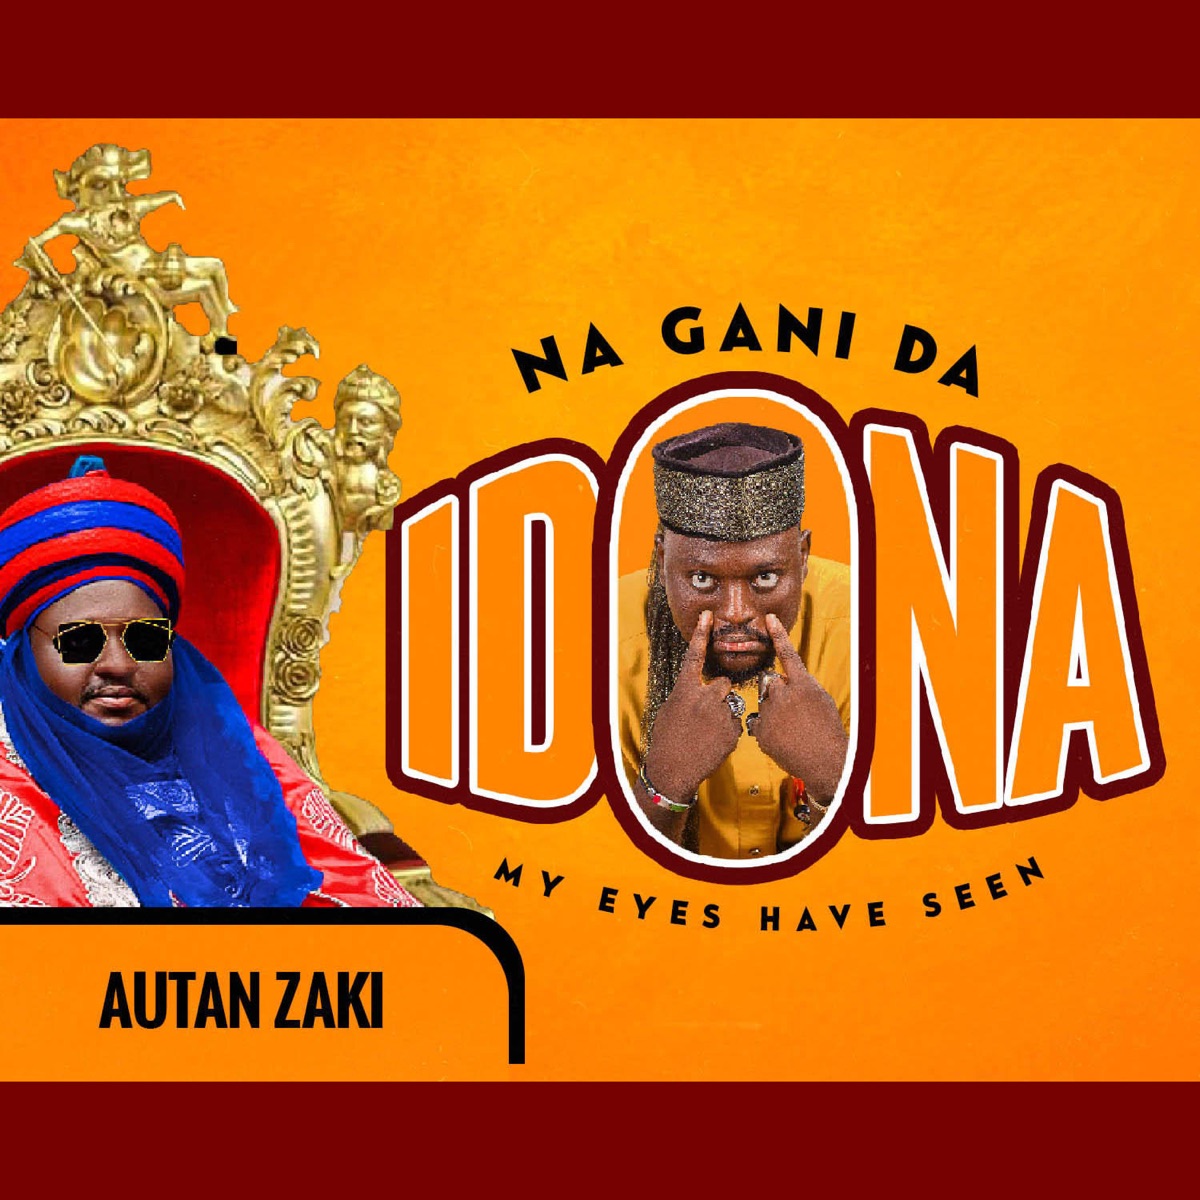 Na Gani Da Ido Na - Single by AutanZaki on Apple Music